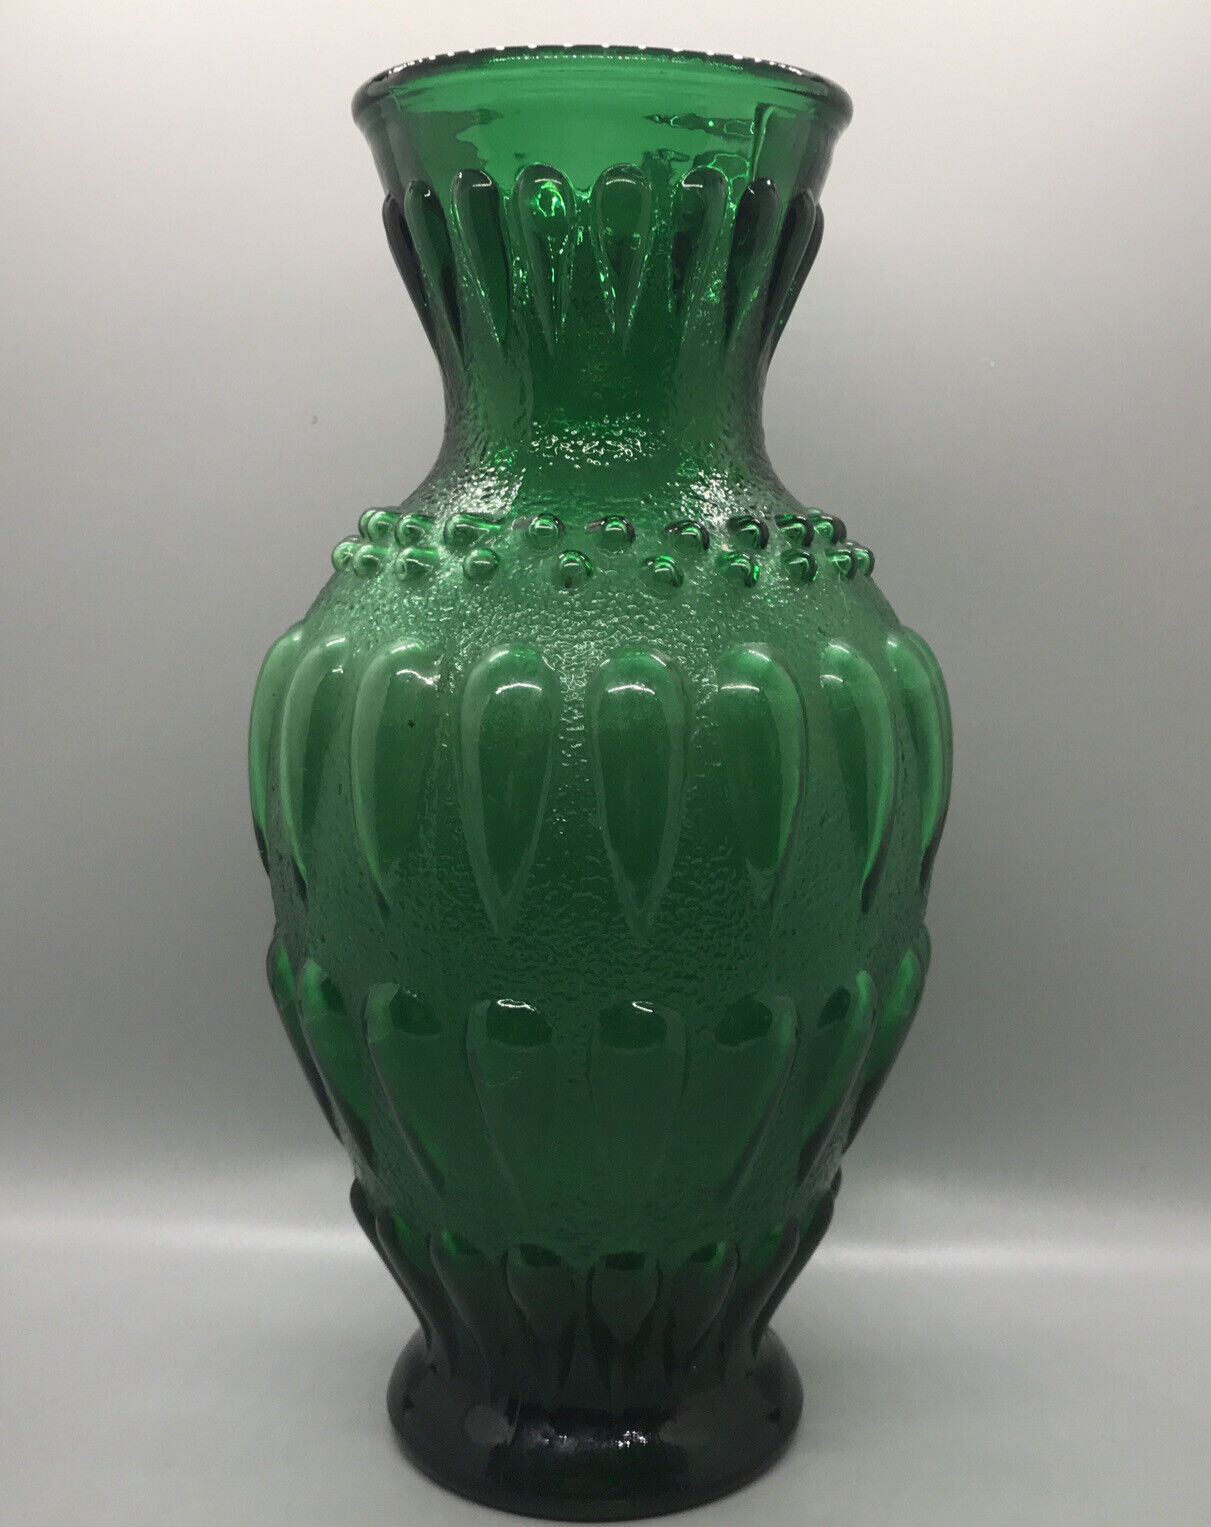 VTG Green Pressed Glass Beaded Vase 10 1/2” High